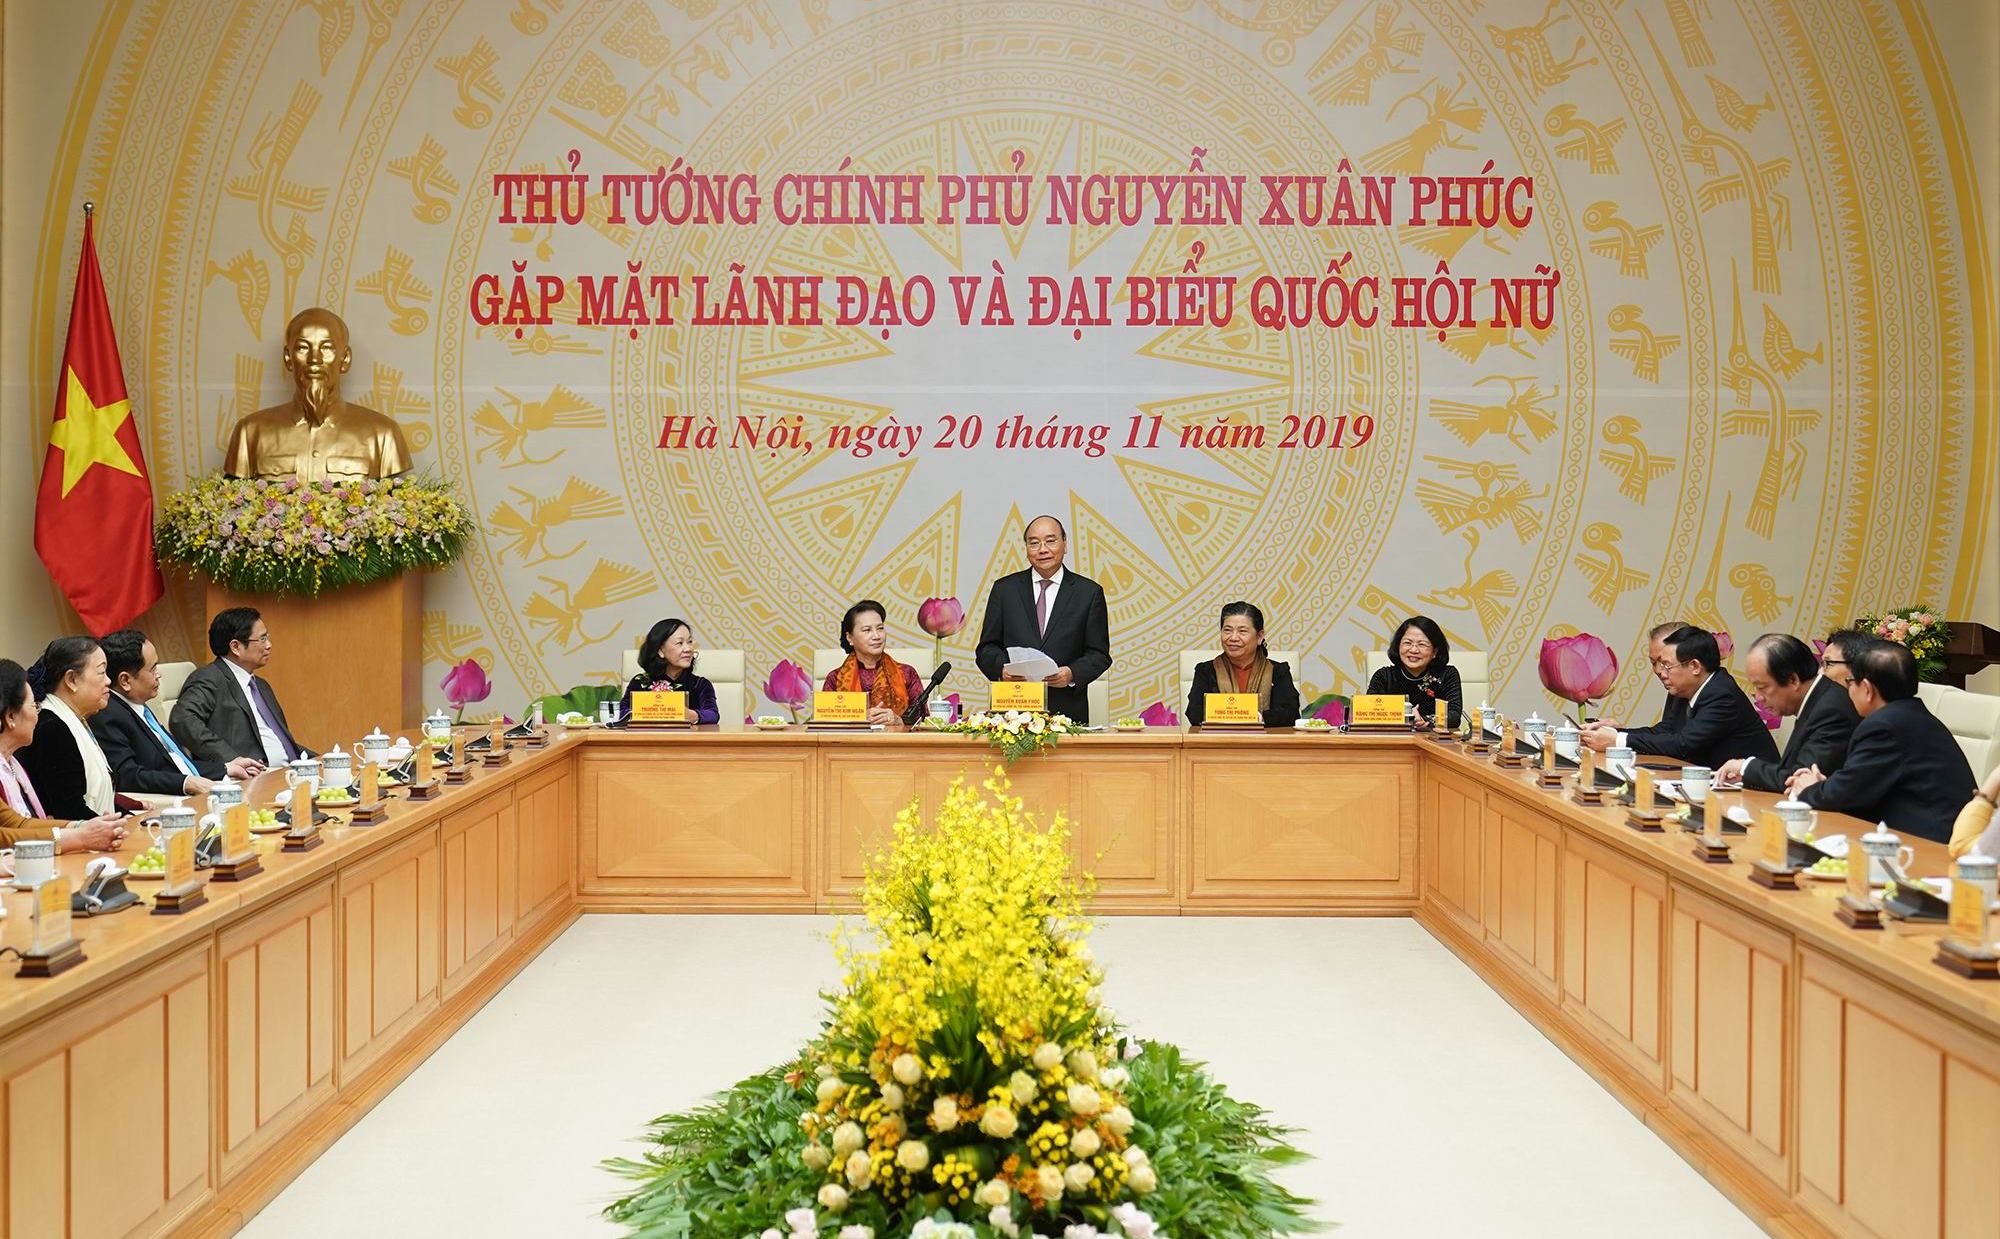 Lòng yêu nước nồng nàn là sức mạnh truyền thống của phụ nữ Việt